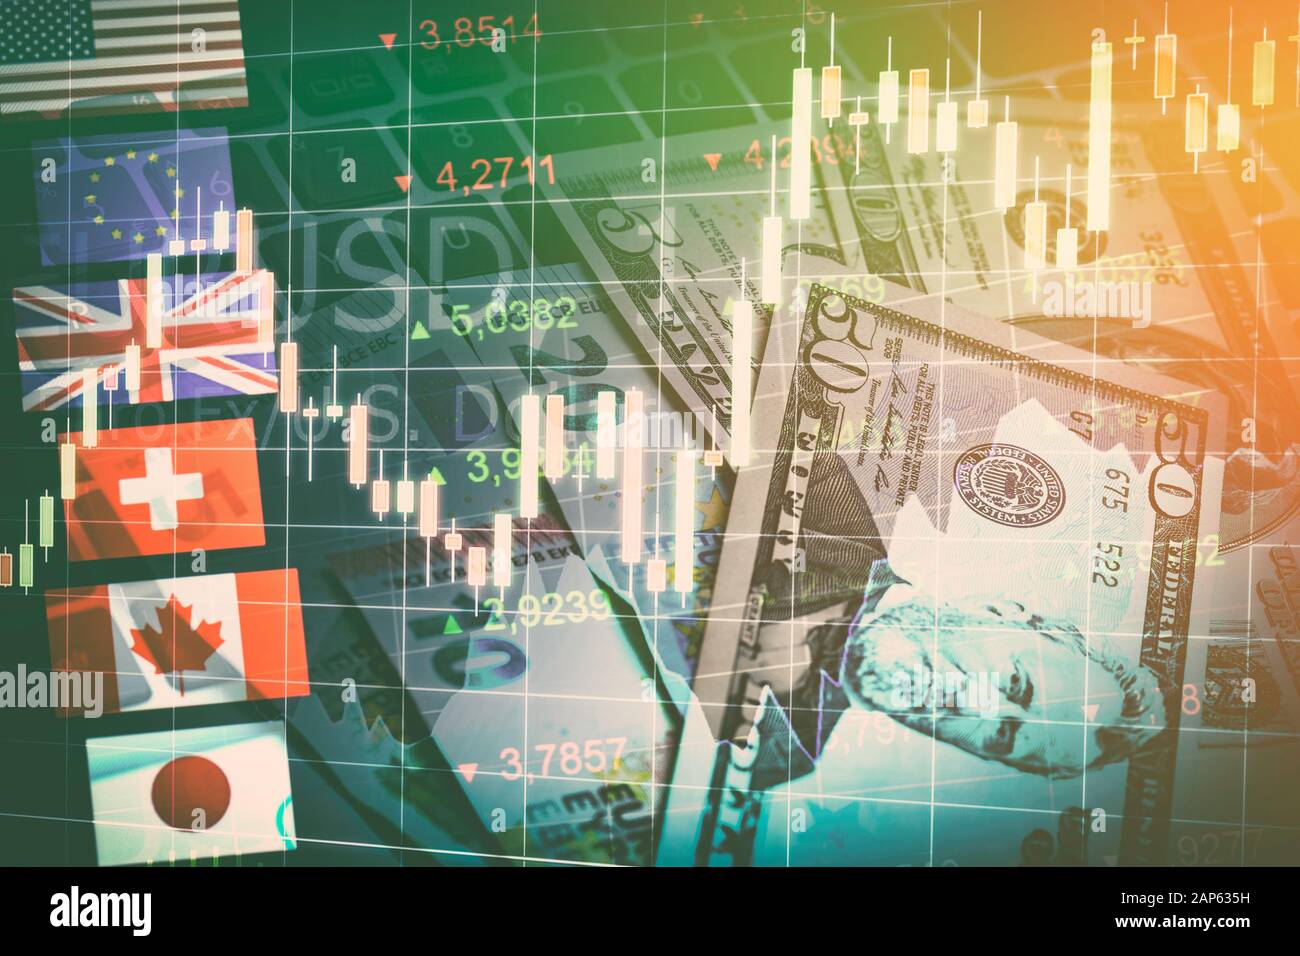 Mercati forex trading sulle valute economia globale del concetto. United Kingdom Pund, Euro Europeo, Americano e il dollaro canadese, yen giapponese valuta Foto Stock